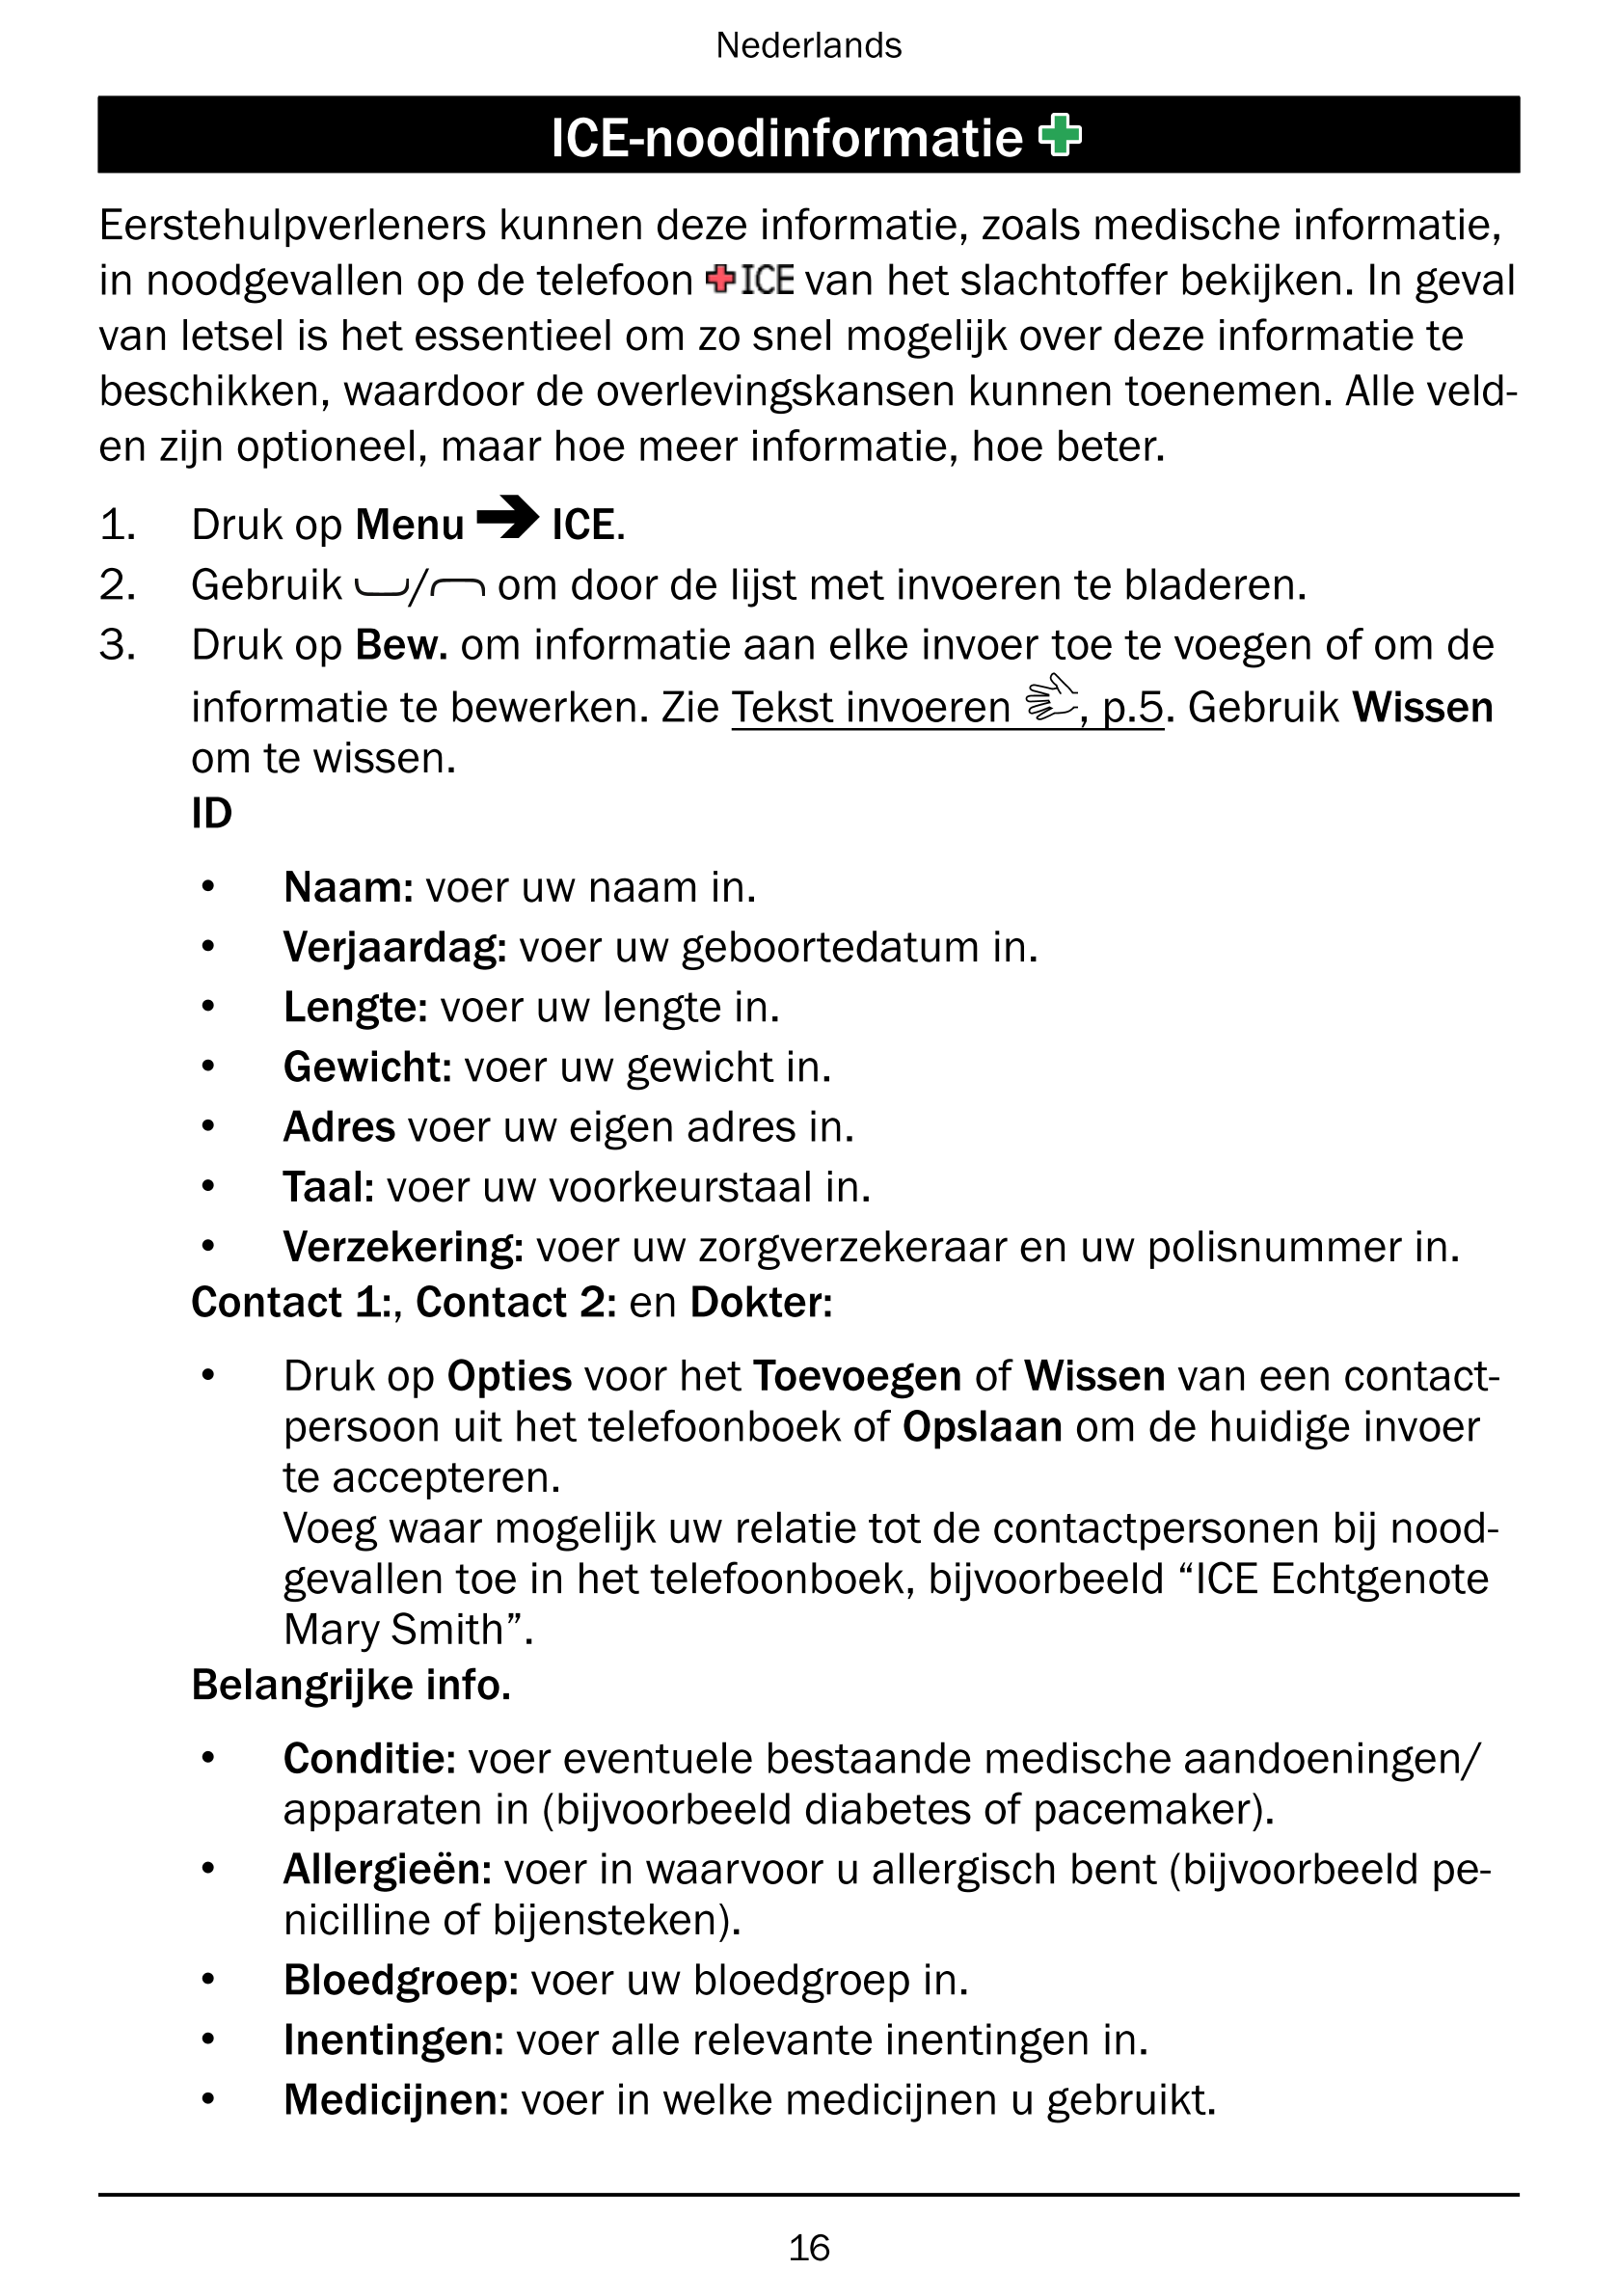 Nederlands
ICE-noodinformatie
Eerstehulpverleners kunnen deze informatie, zoals medische informatie,
in noodgevallen op de telef